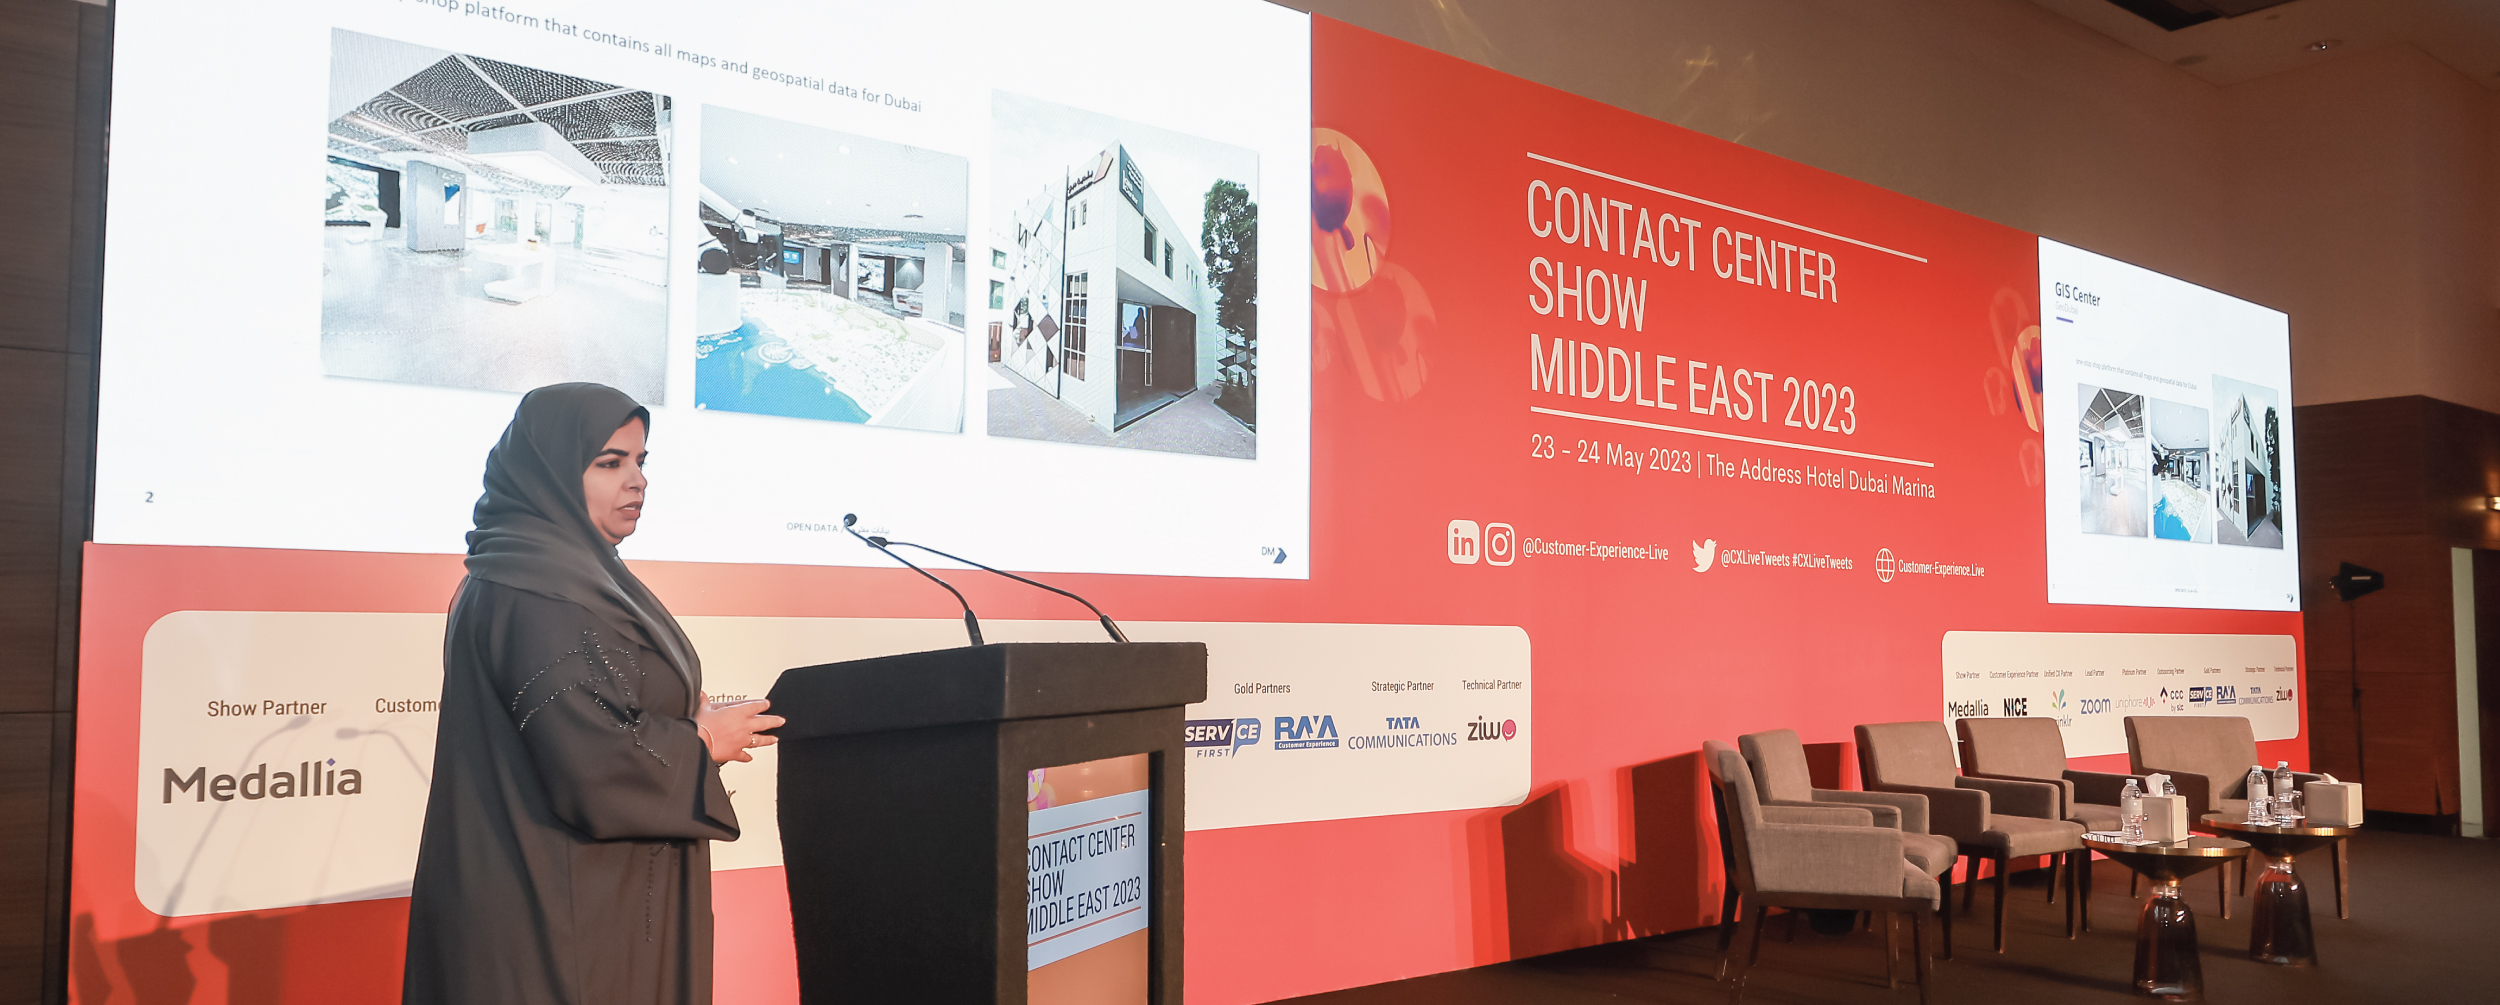 مؤتمر Contact Center Show Middle East 2023 